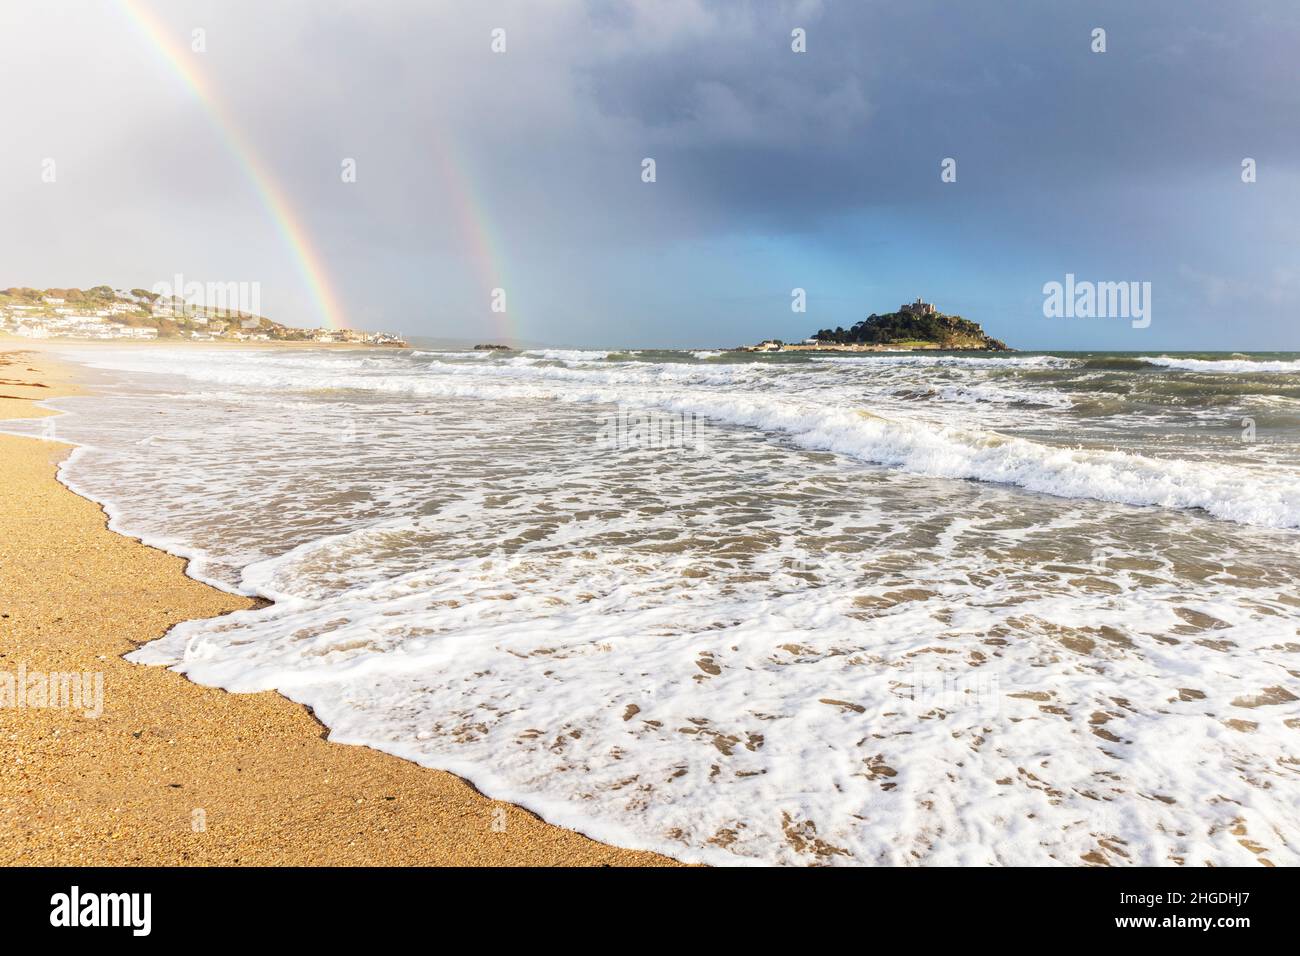 St Michael's Mount, Cornovaglia, Regno Unito, Inghilterra, doppio arcobaleno, Marea in arrivo, Cornish,costa,costa,oceano,mare,mare,spiaggia,sabbia,sabbiosa,arcobaleno, Foto Stock